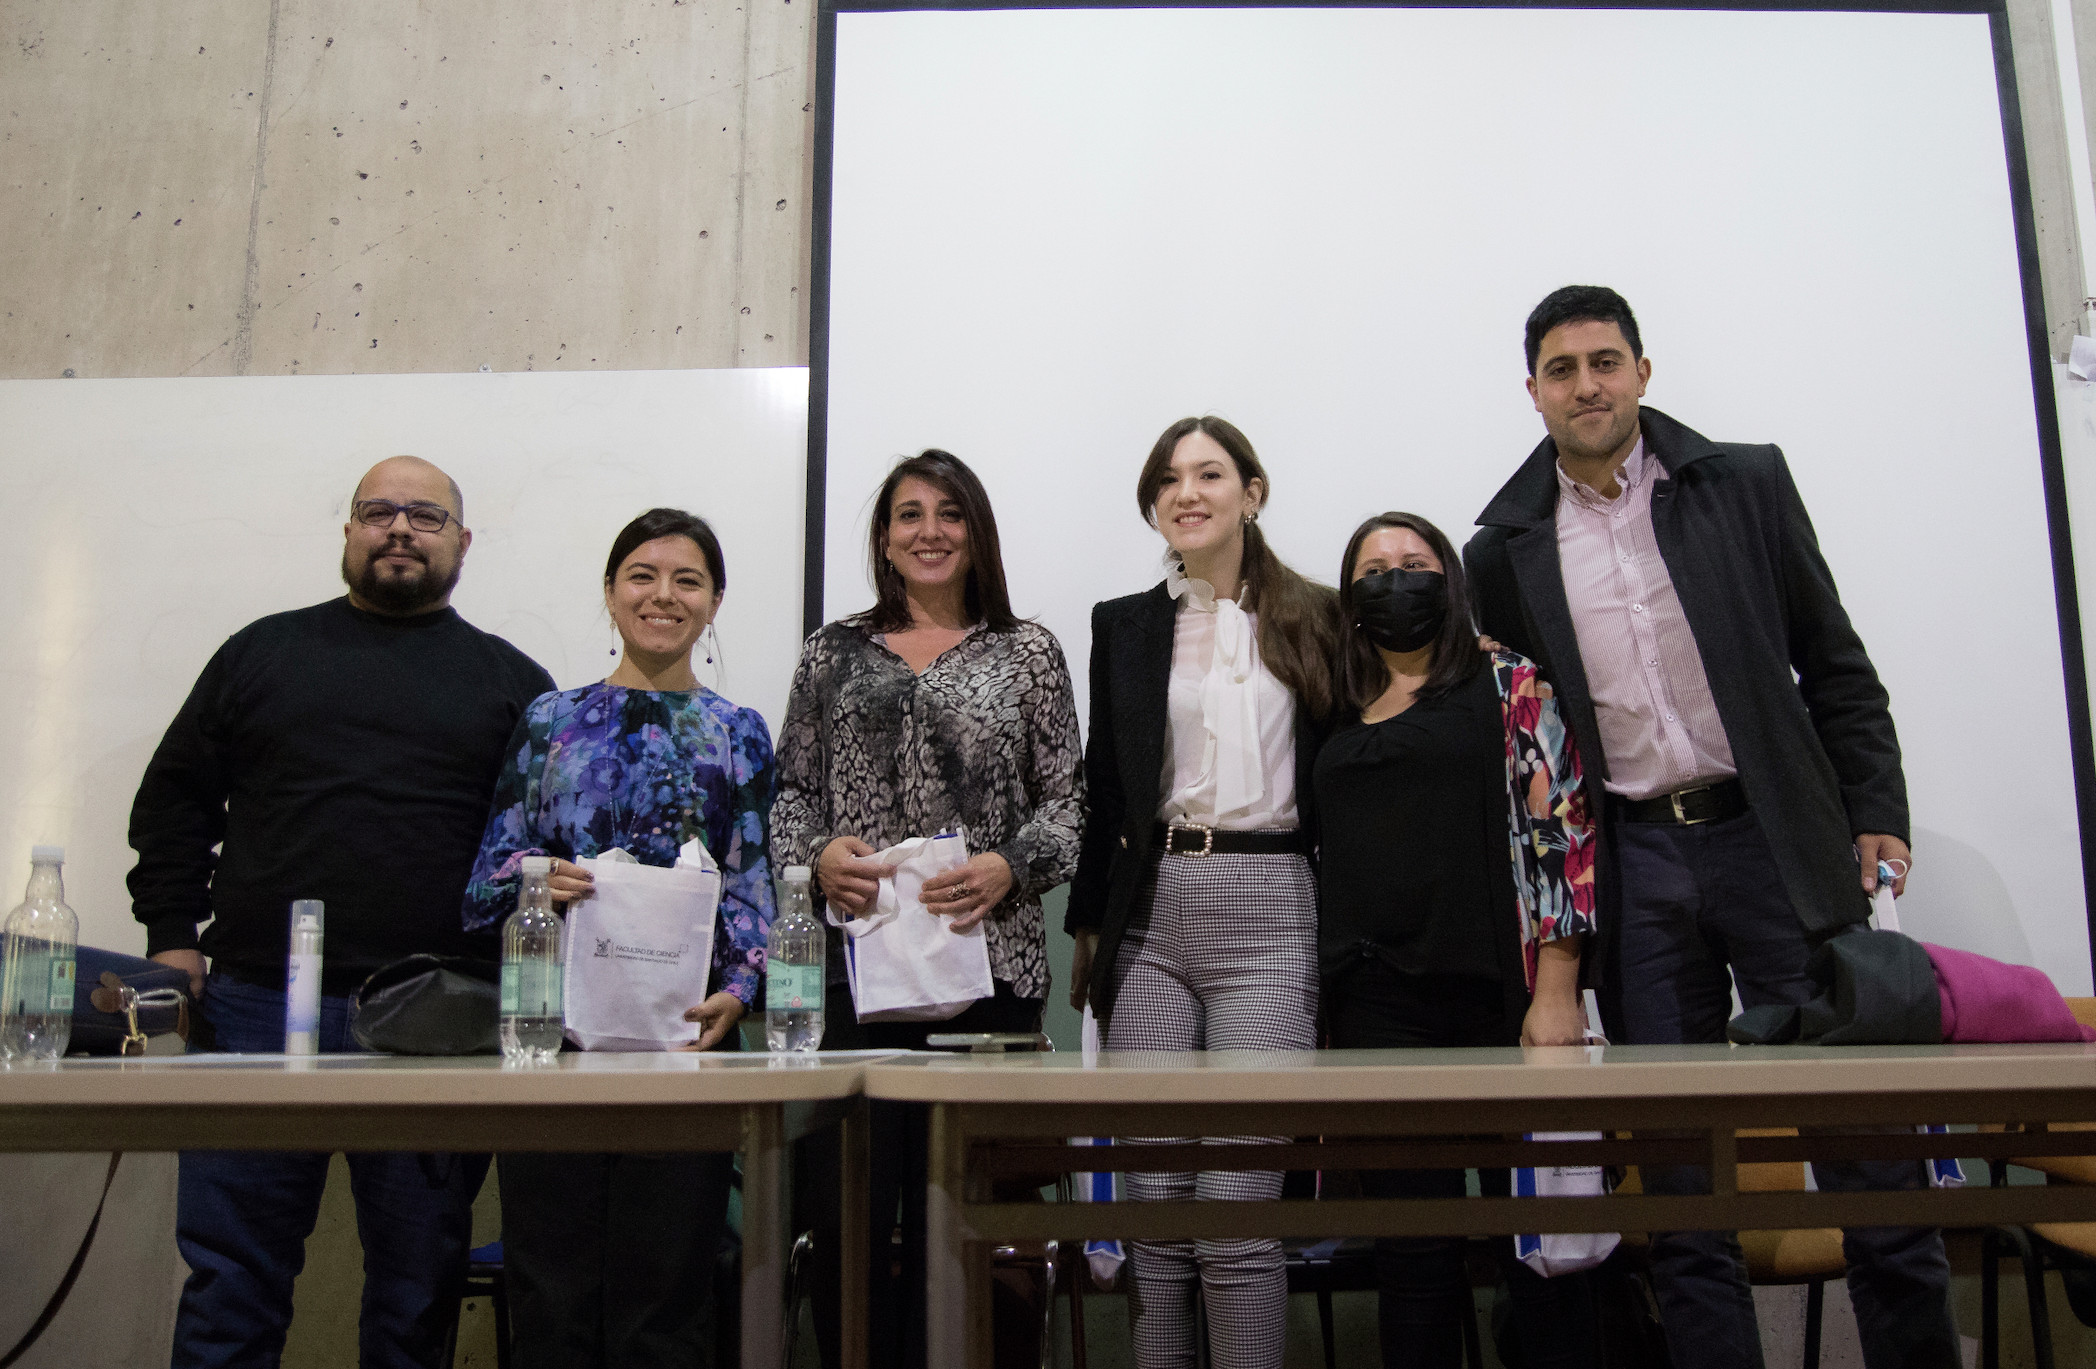 Pluralismo, proactividad y pensamiento crítico, características destacadas por quienes egresan de Ingeniería Estadística de la Universidad de Santiago